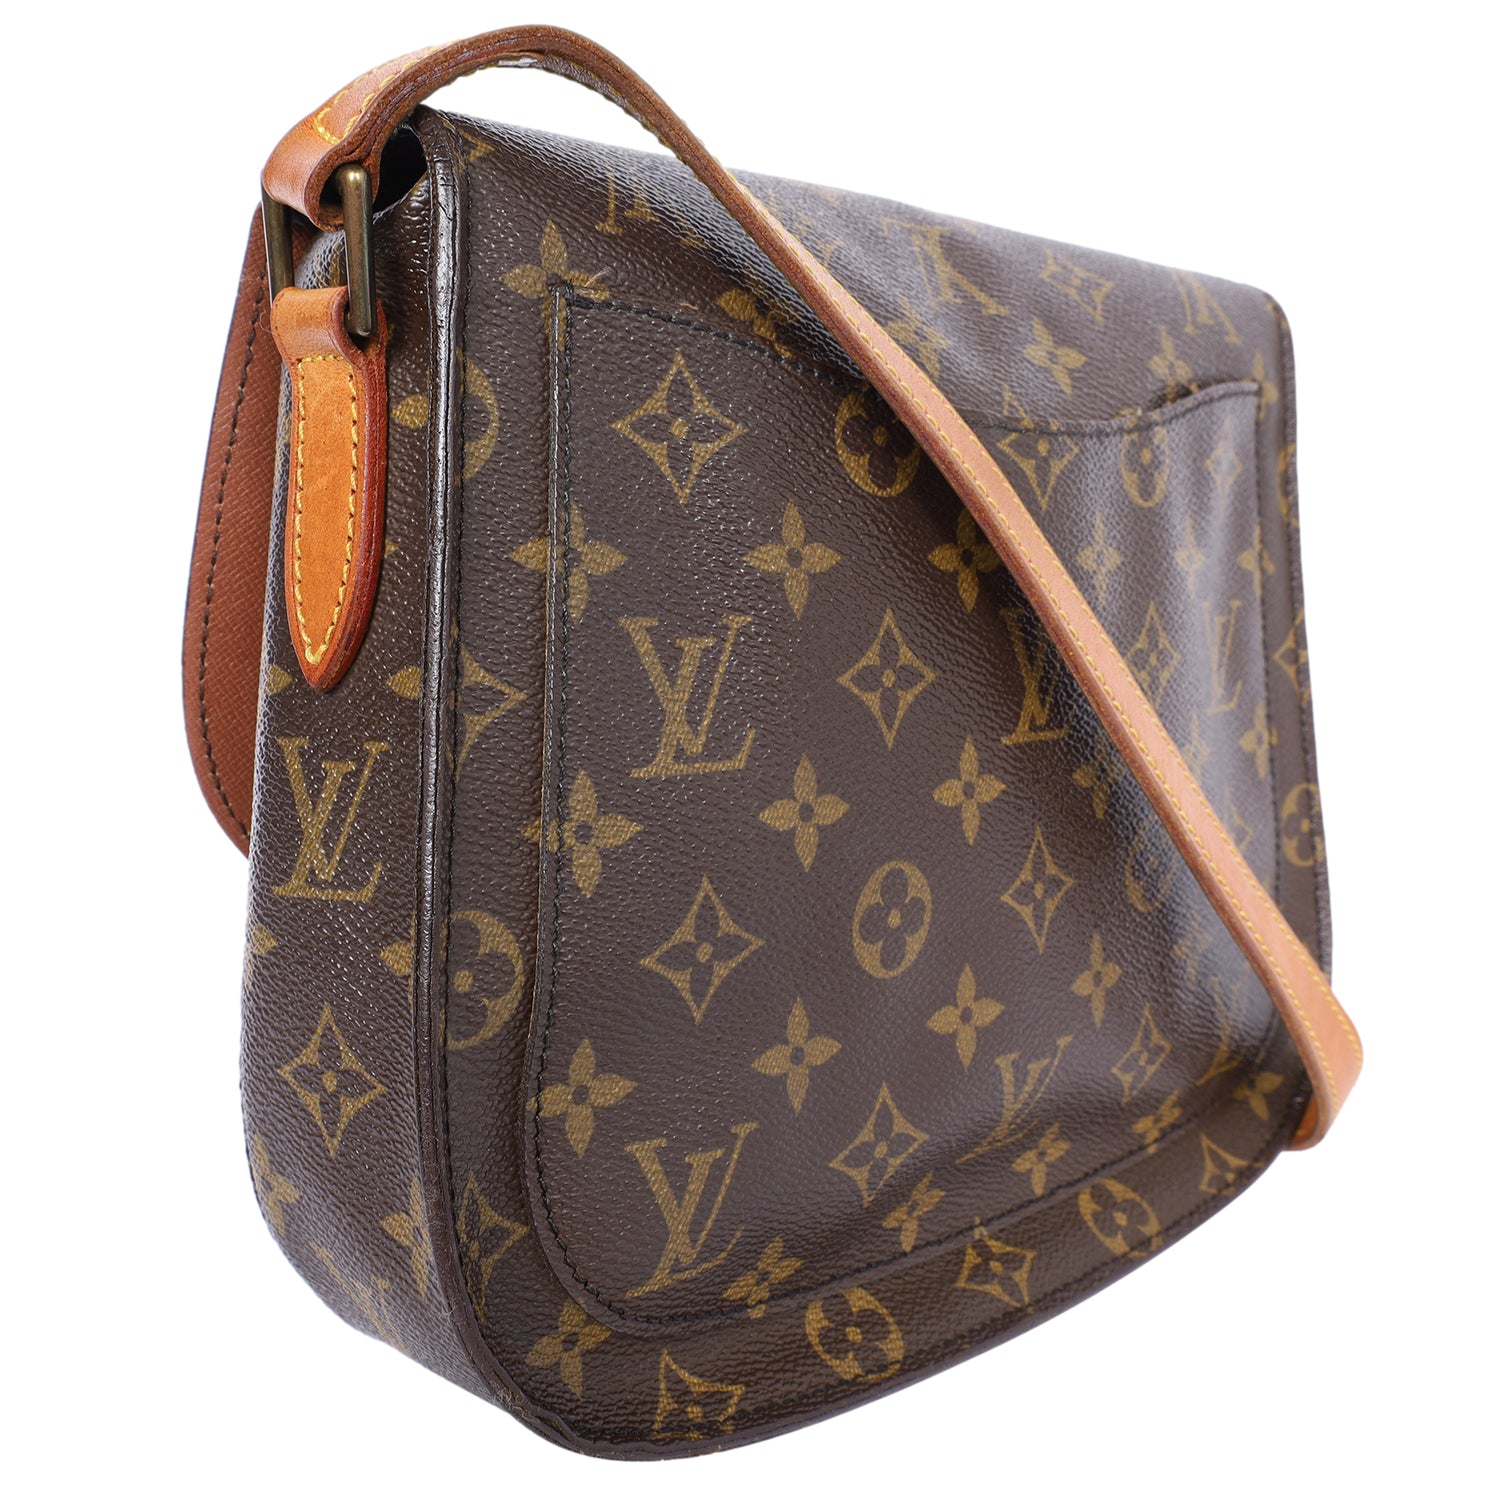 Authentic LOUIS VUITTON Saint Cloud GM Monogram Shoulder Bag #51757